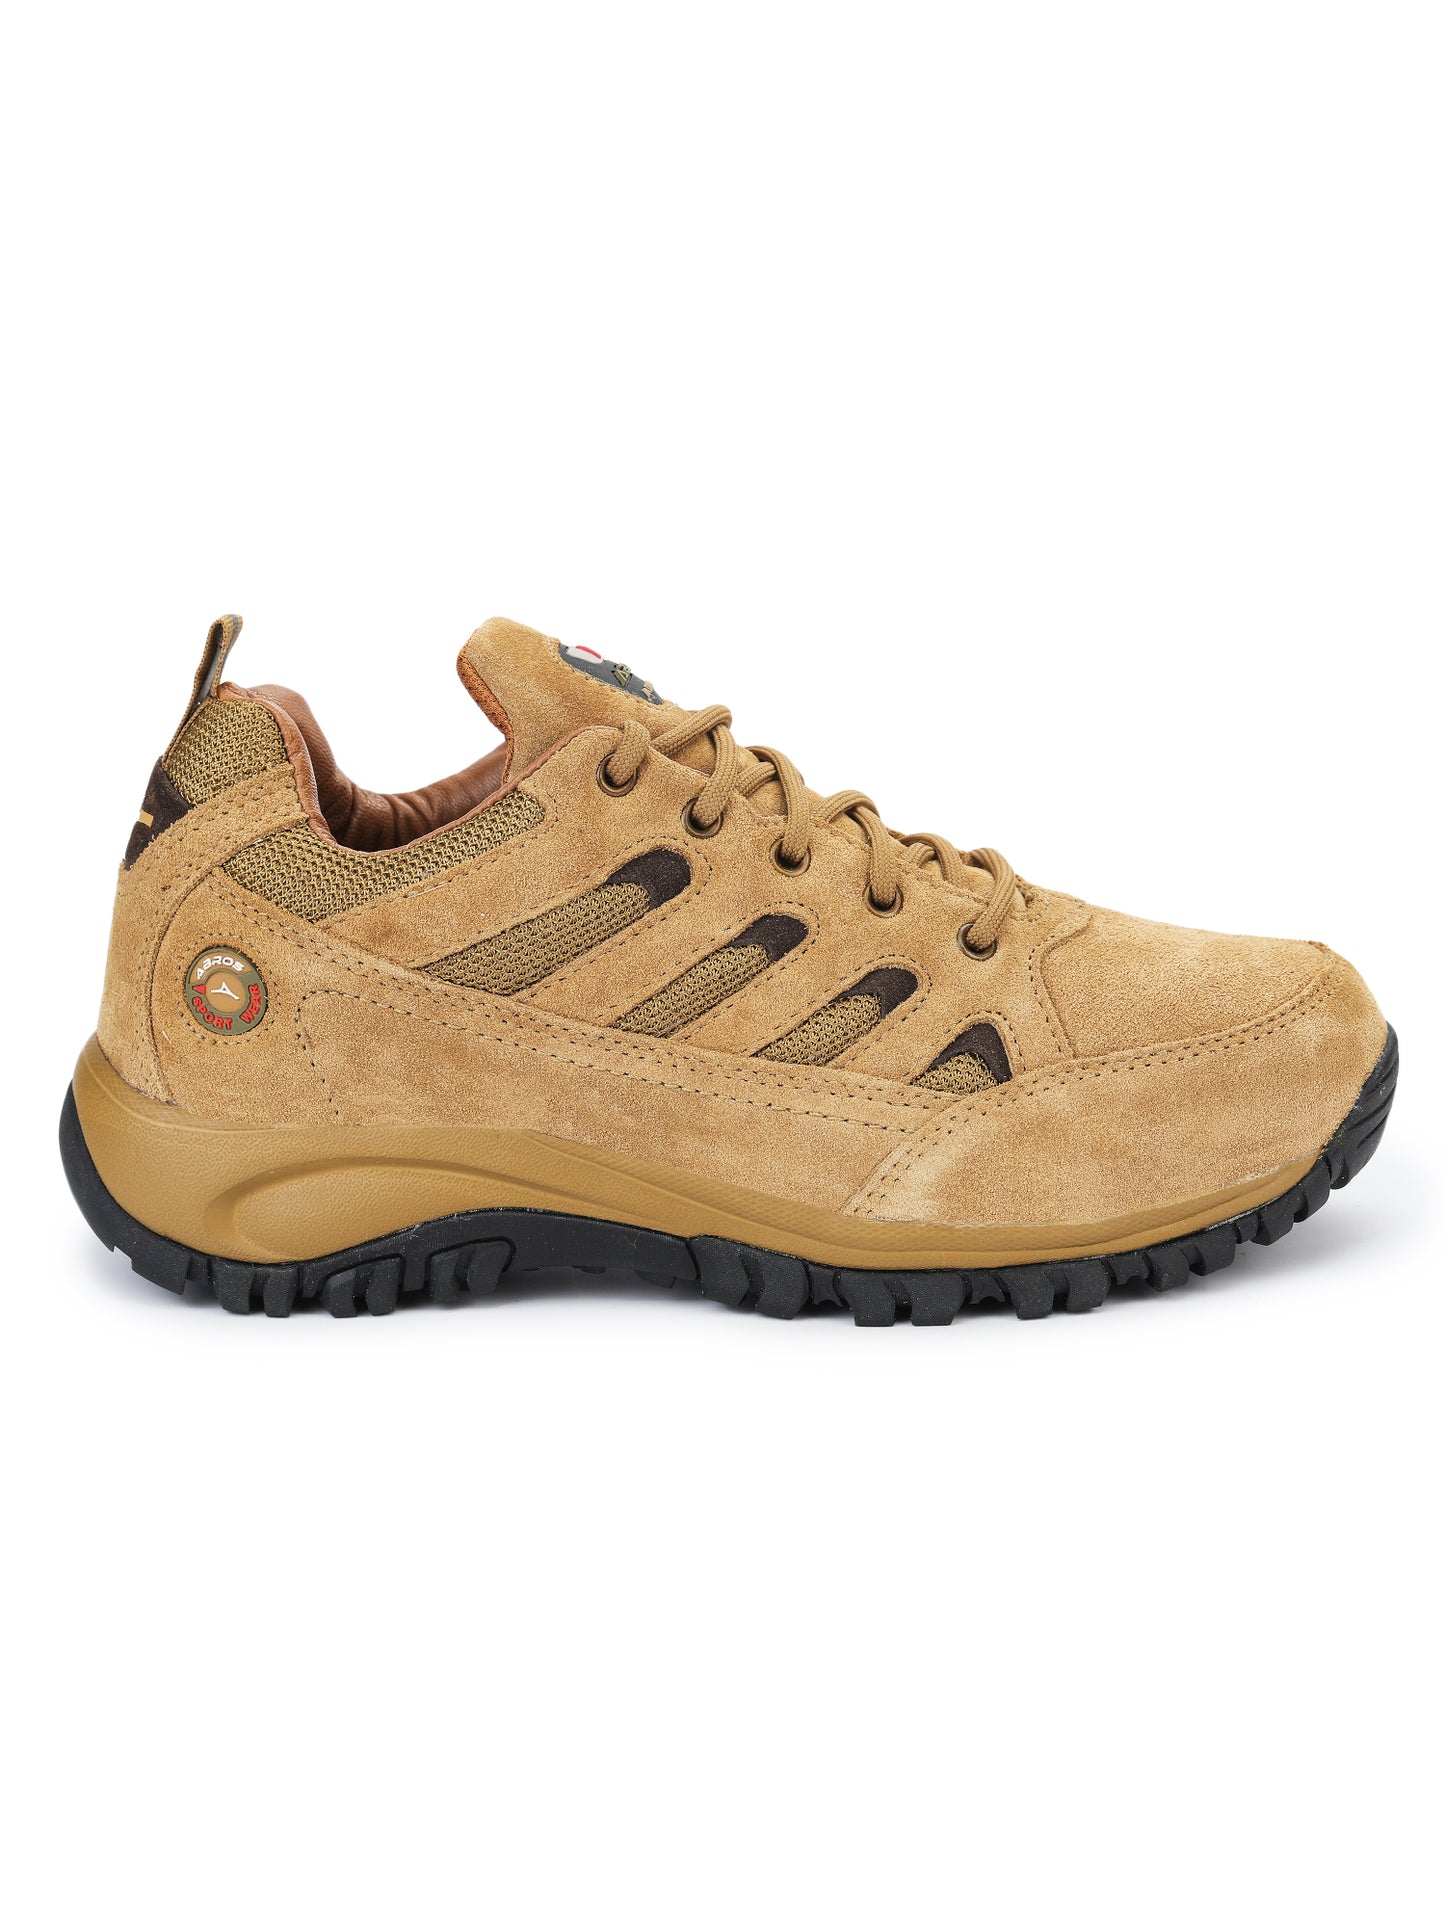 Felixo Outdoor-Shoes For Men's